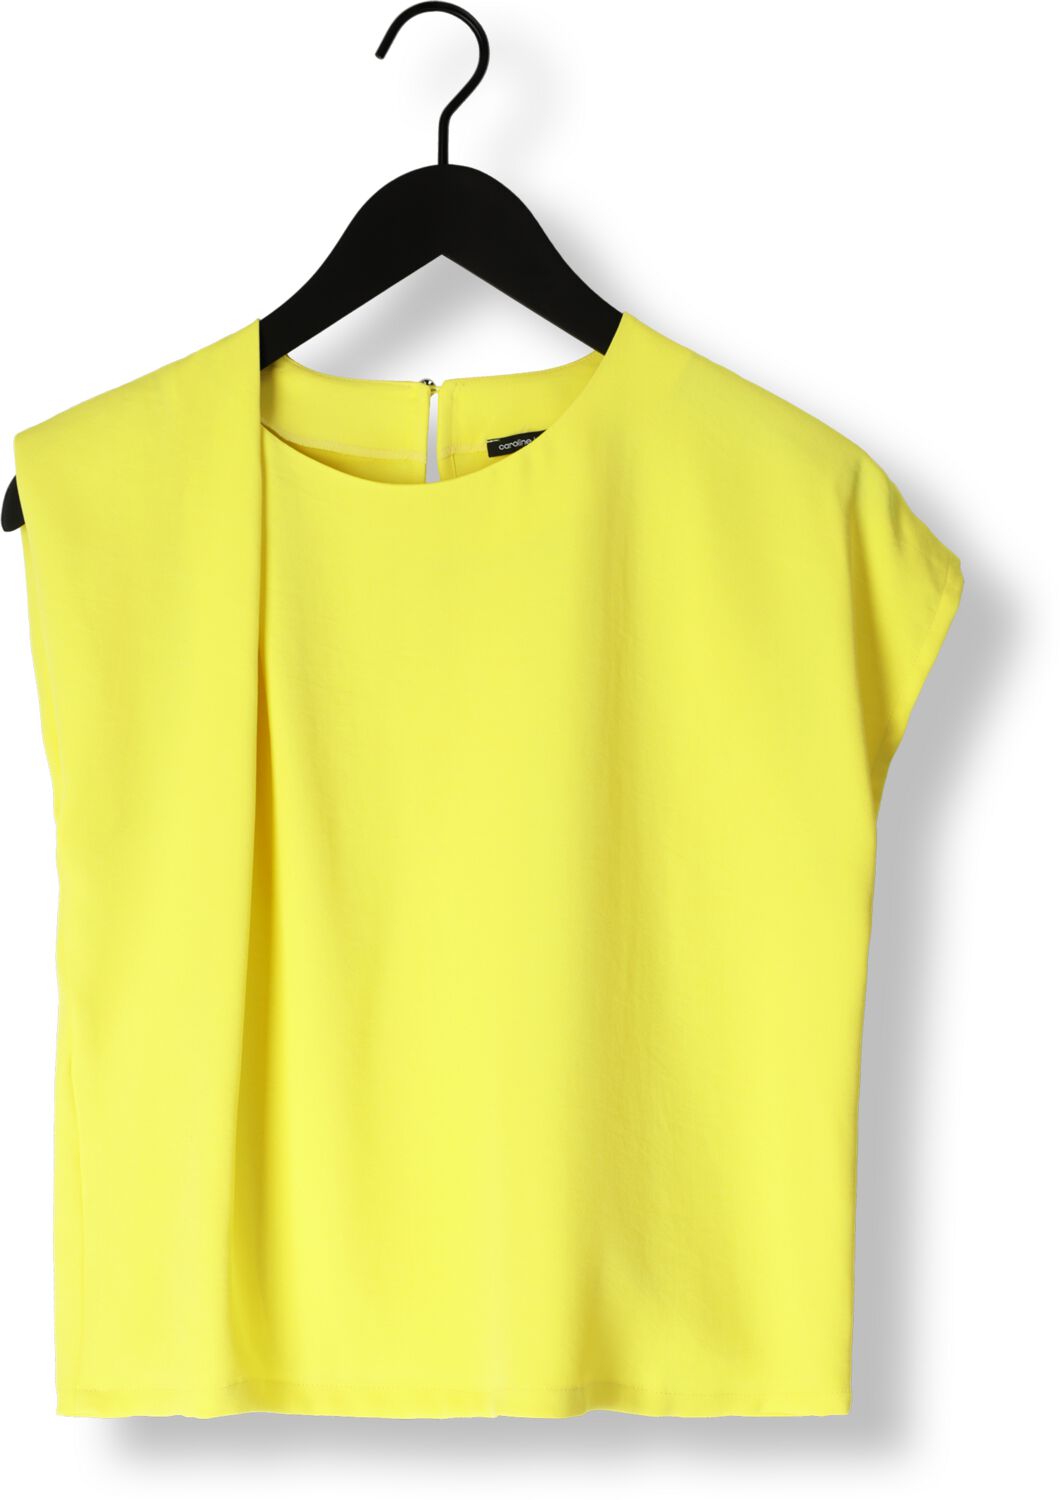 CAROLINE BISS Dames Tops & T-shirts 1621 80 Lime